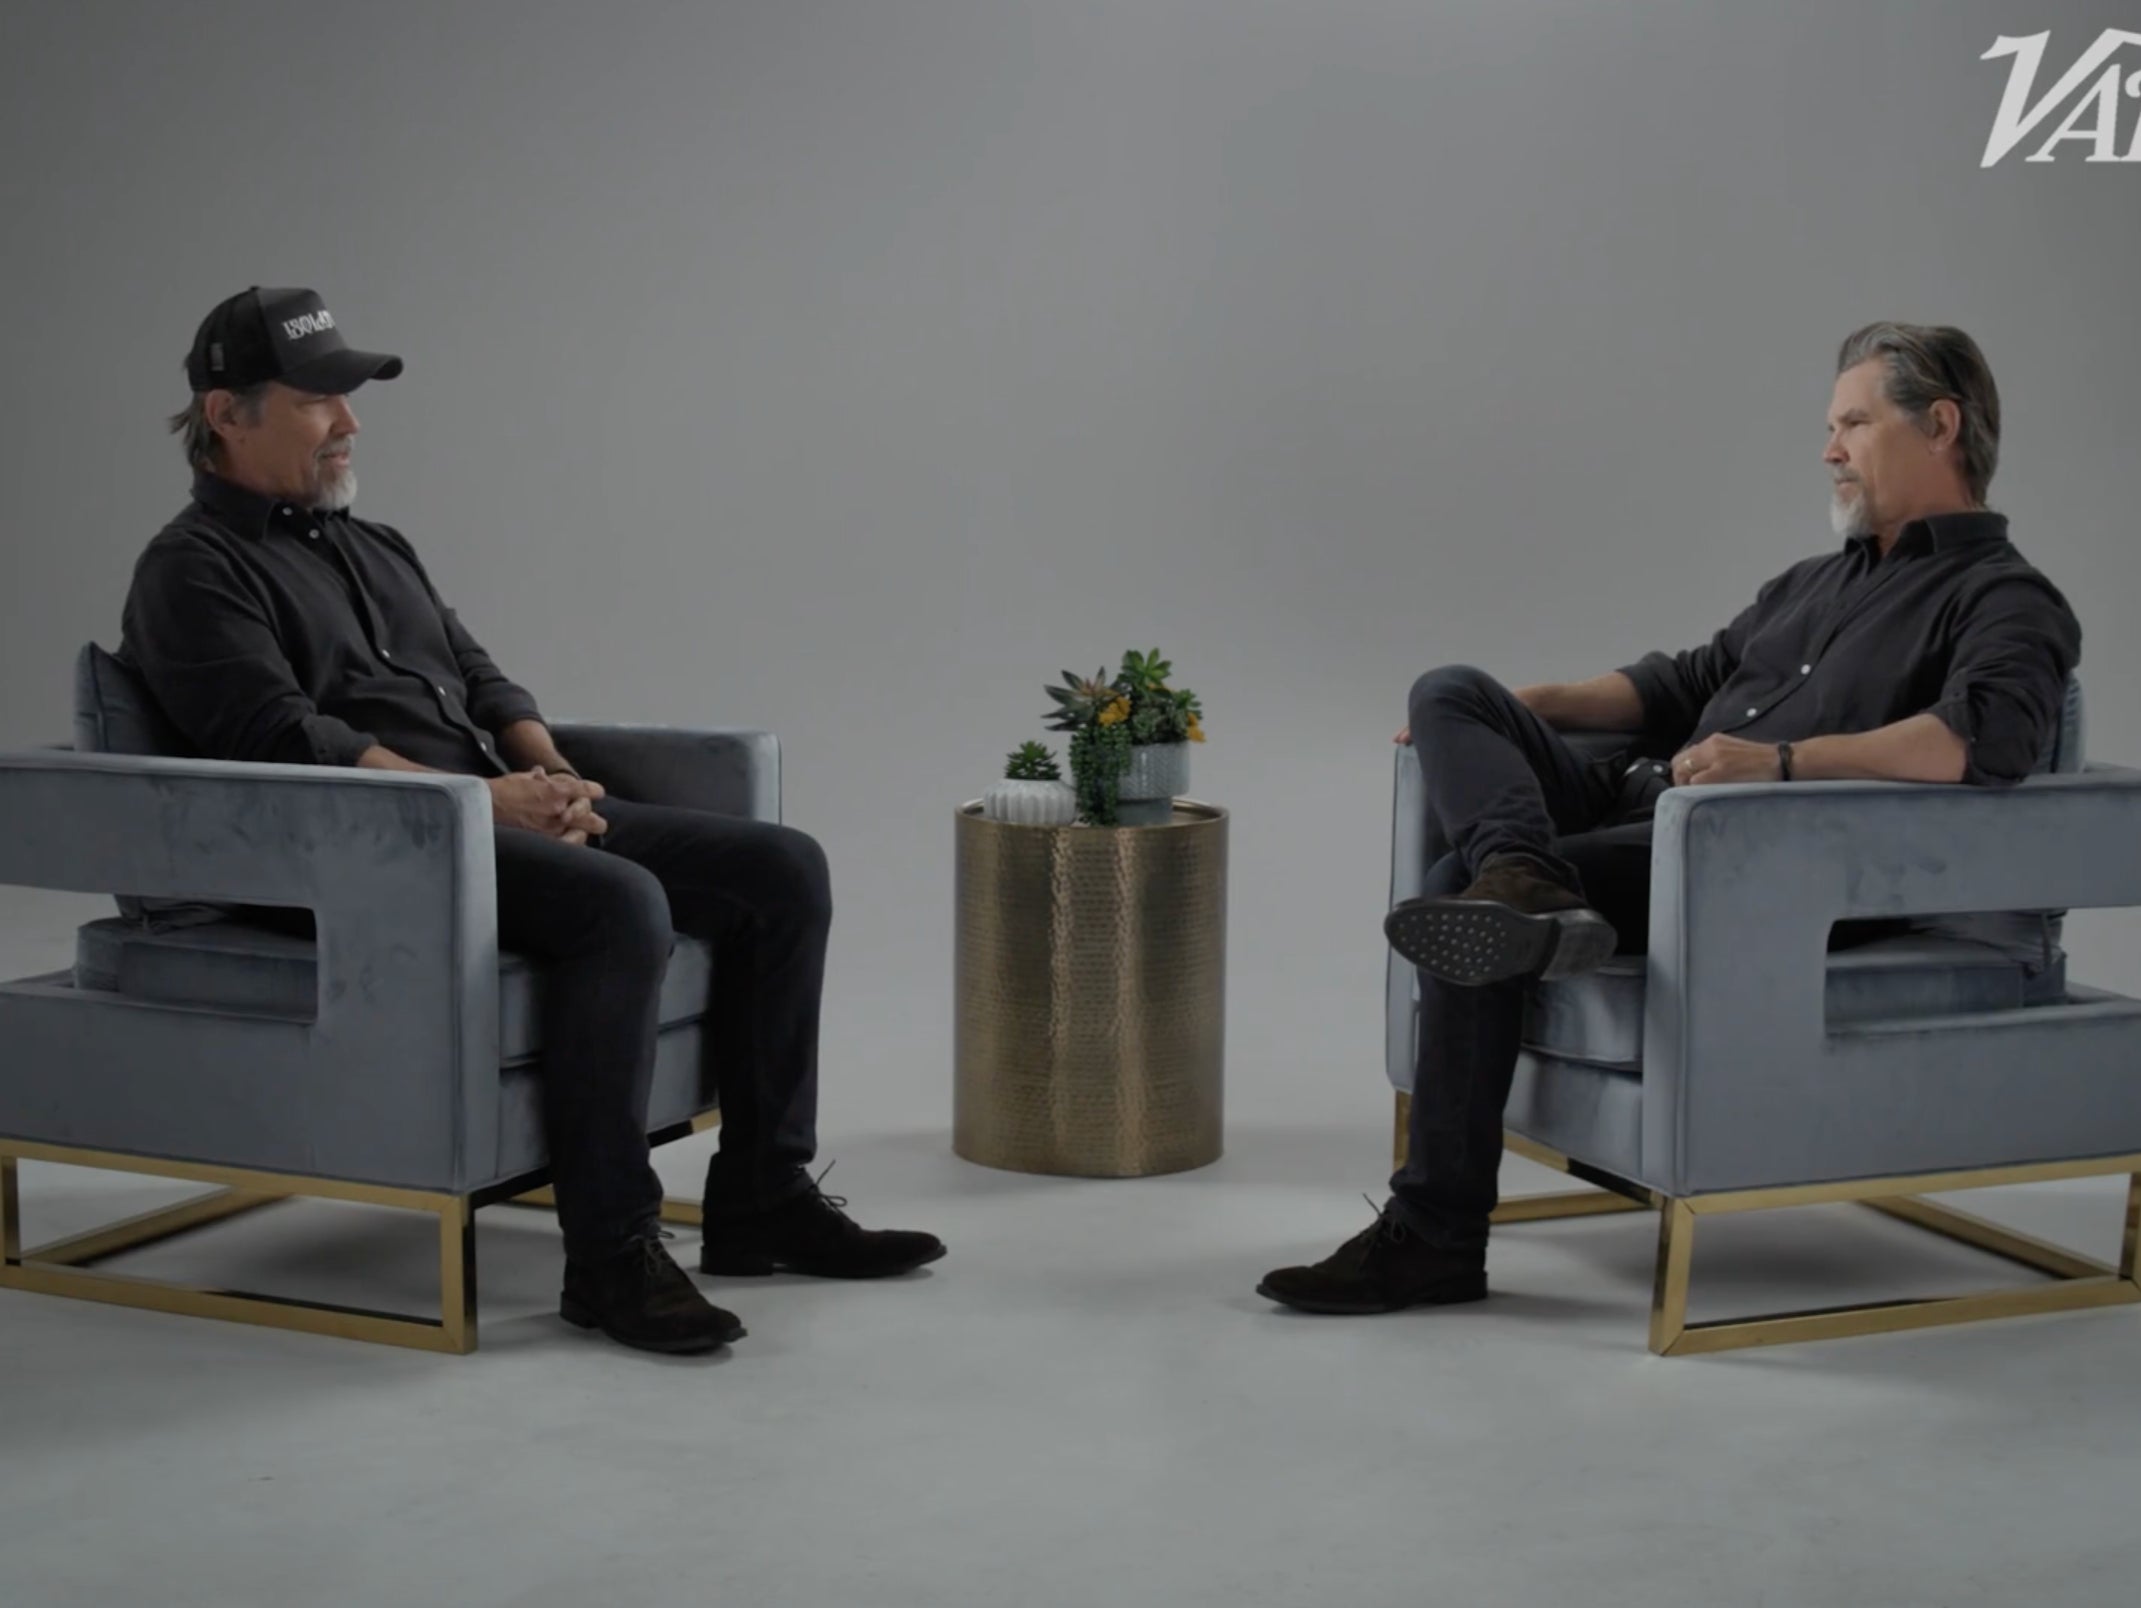 Josh Brolin interviews himself for ‘Actors on Actors’